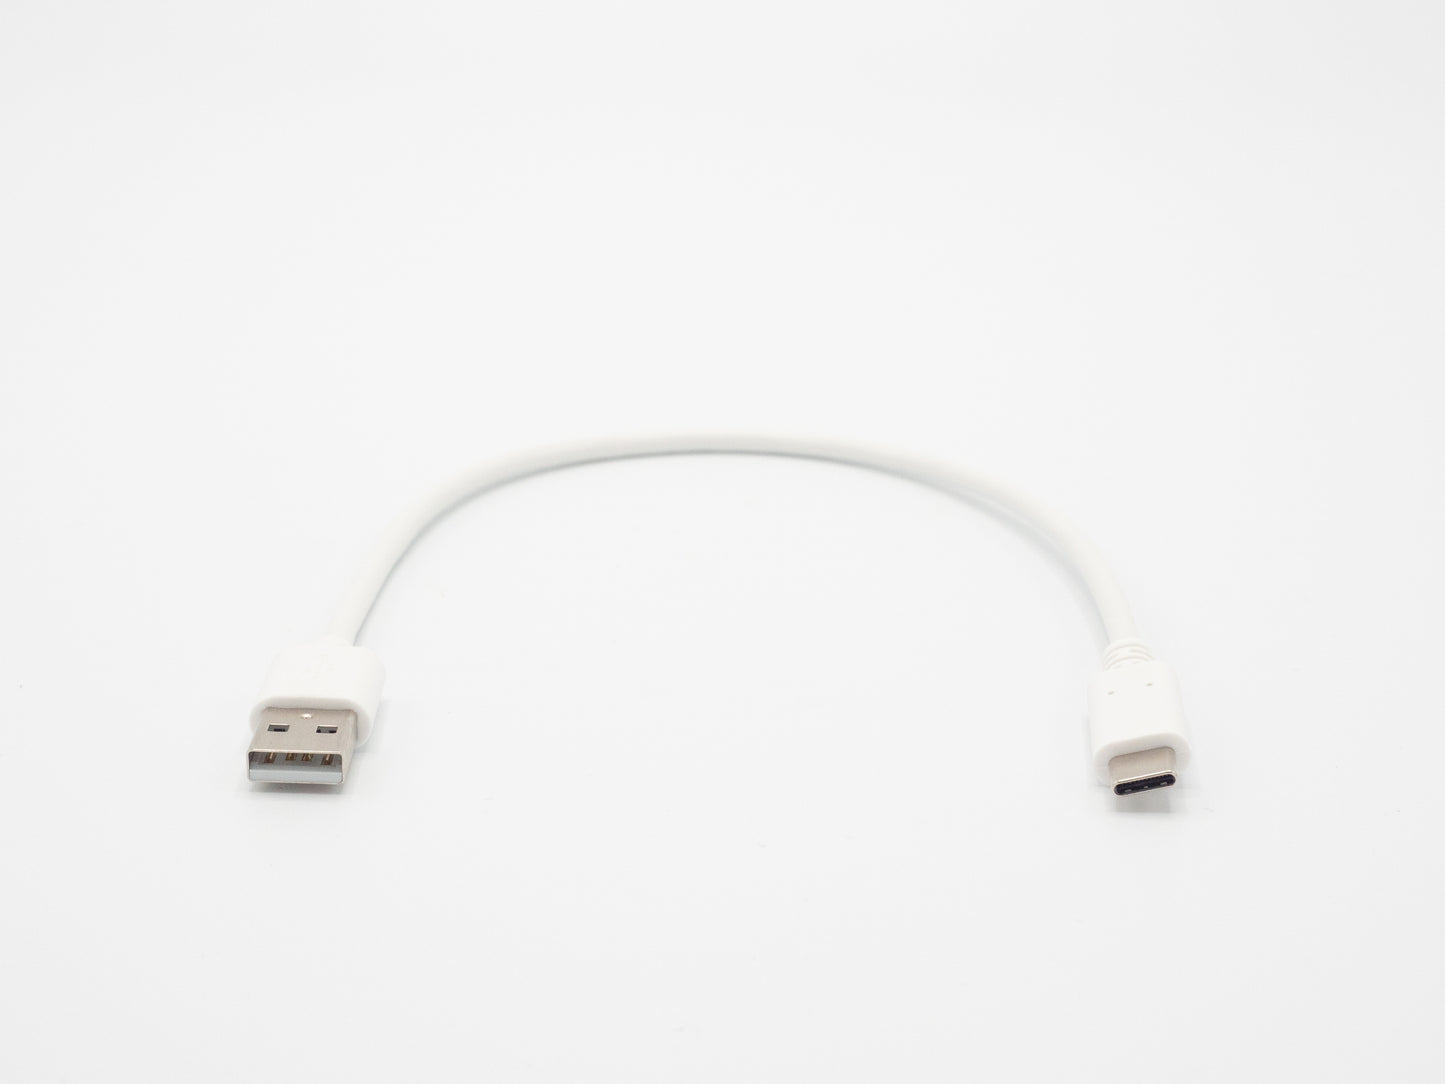 Picoo 4-poorts charger + 2 kabels (EU)